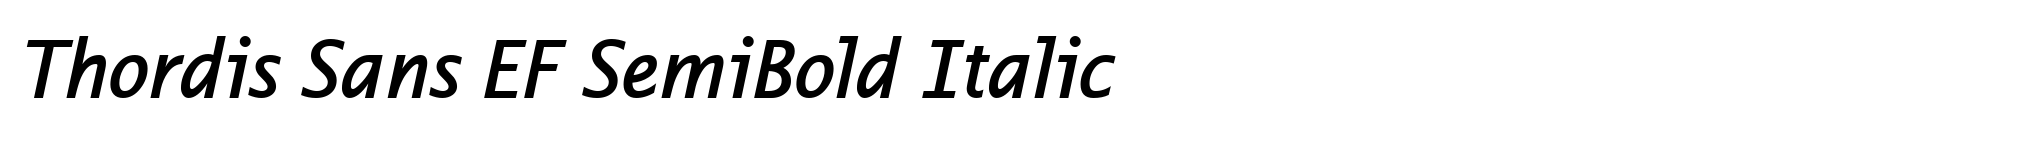 Thordis Sans EF SemiBold Italic image